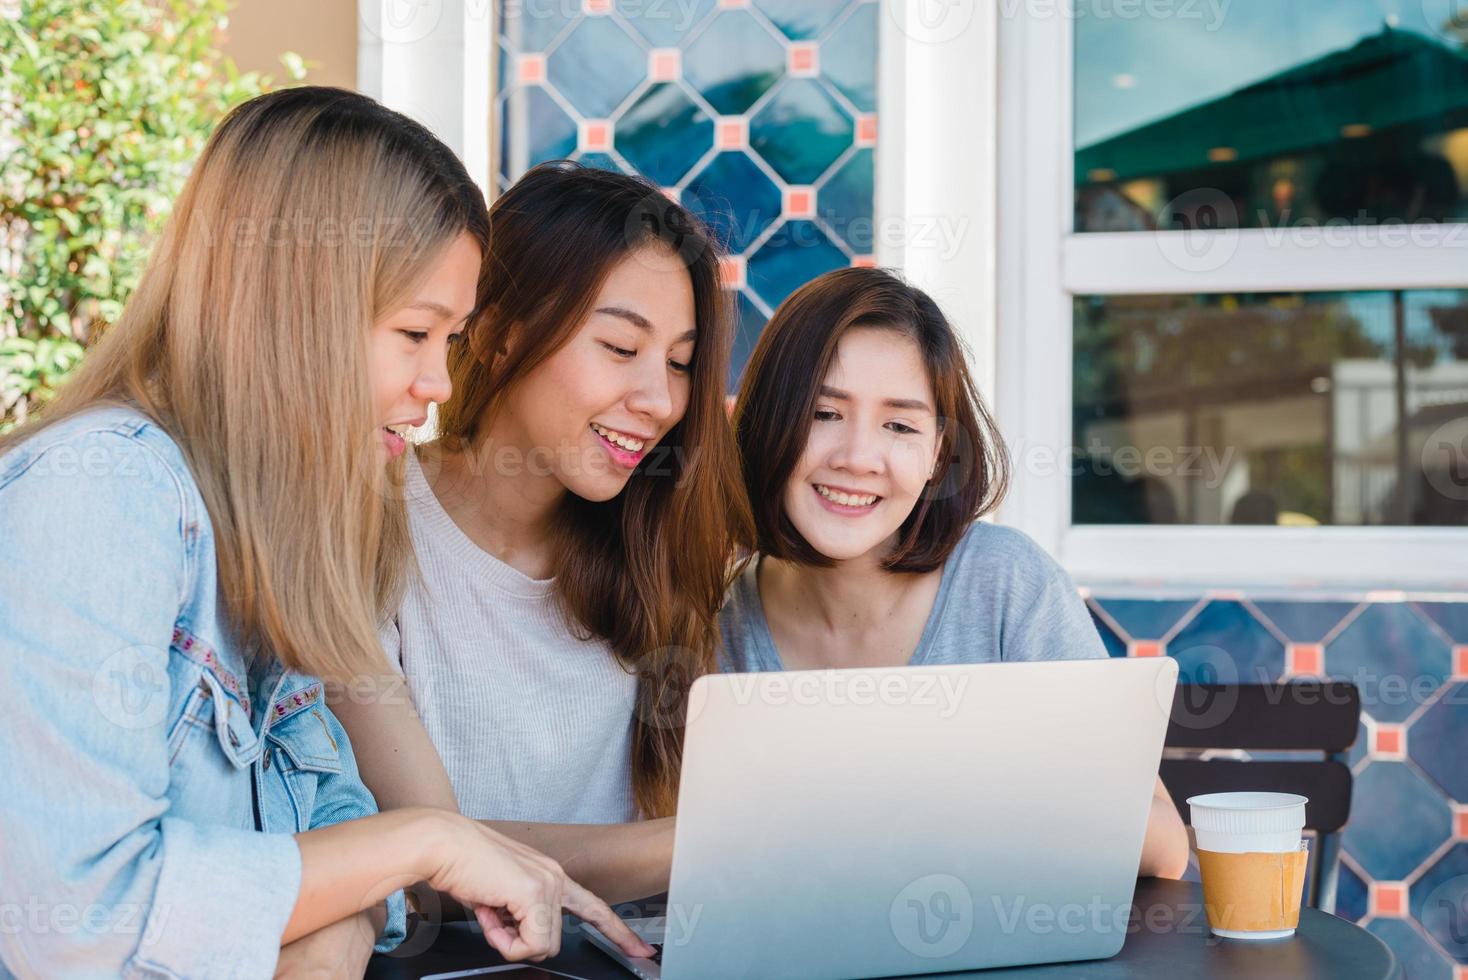 Aziatische jonge vrouwen in slimme vrijetijdskleding die e-mail verzenden op laptop en koffie drinken terwijl ze in een café zitten. lifestyle vrouwen communicatie en werken in coffeeshop concept. foto